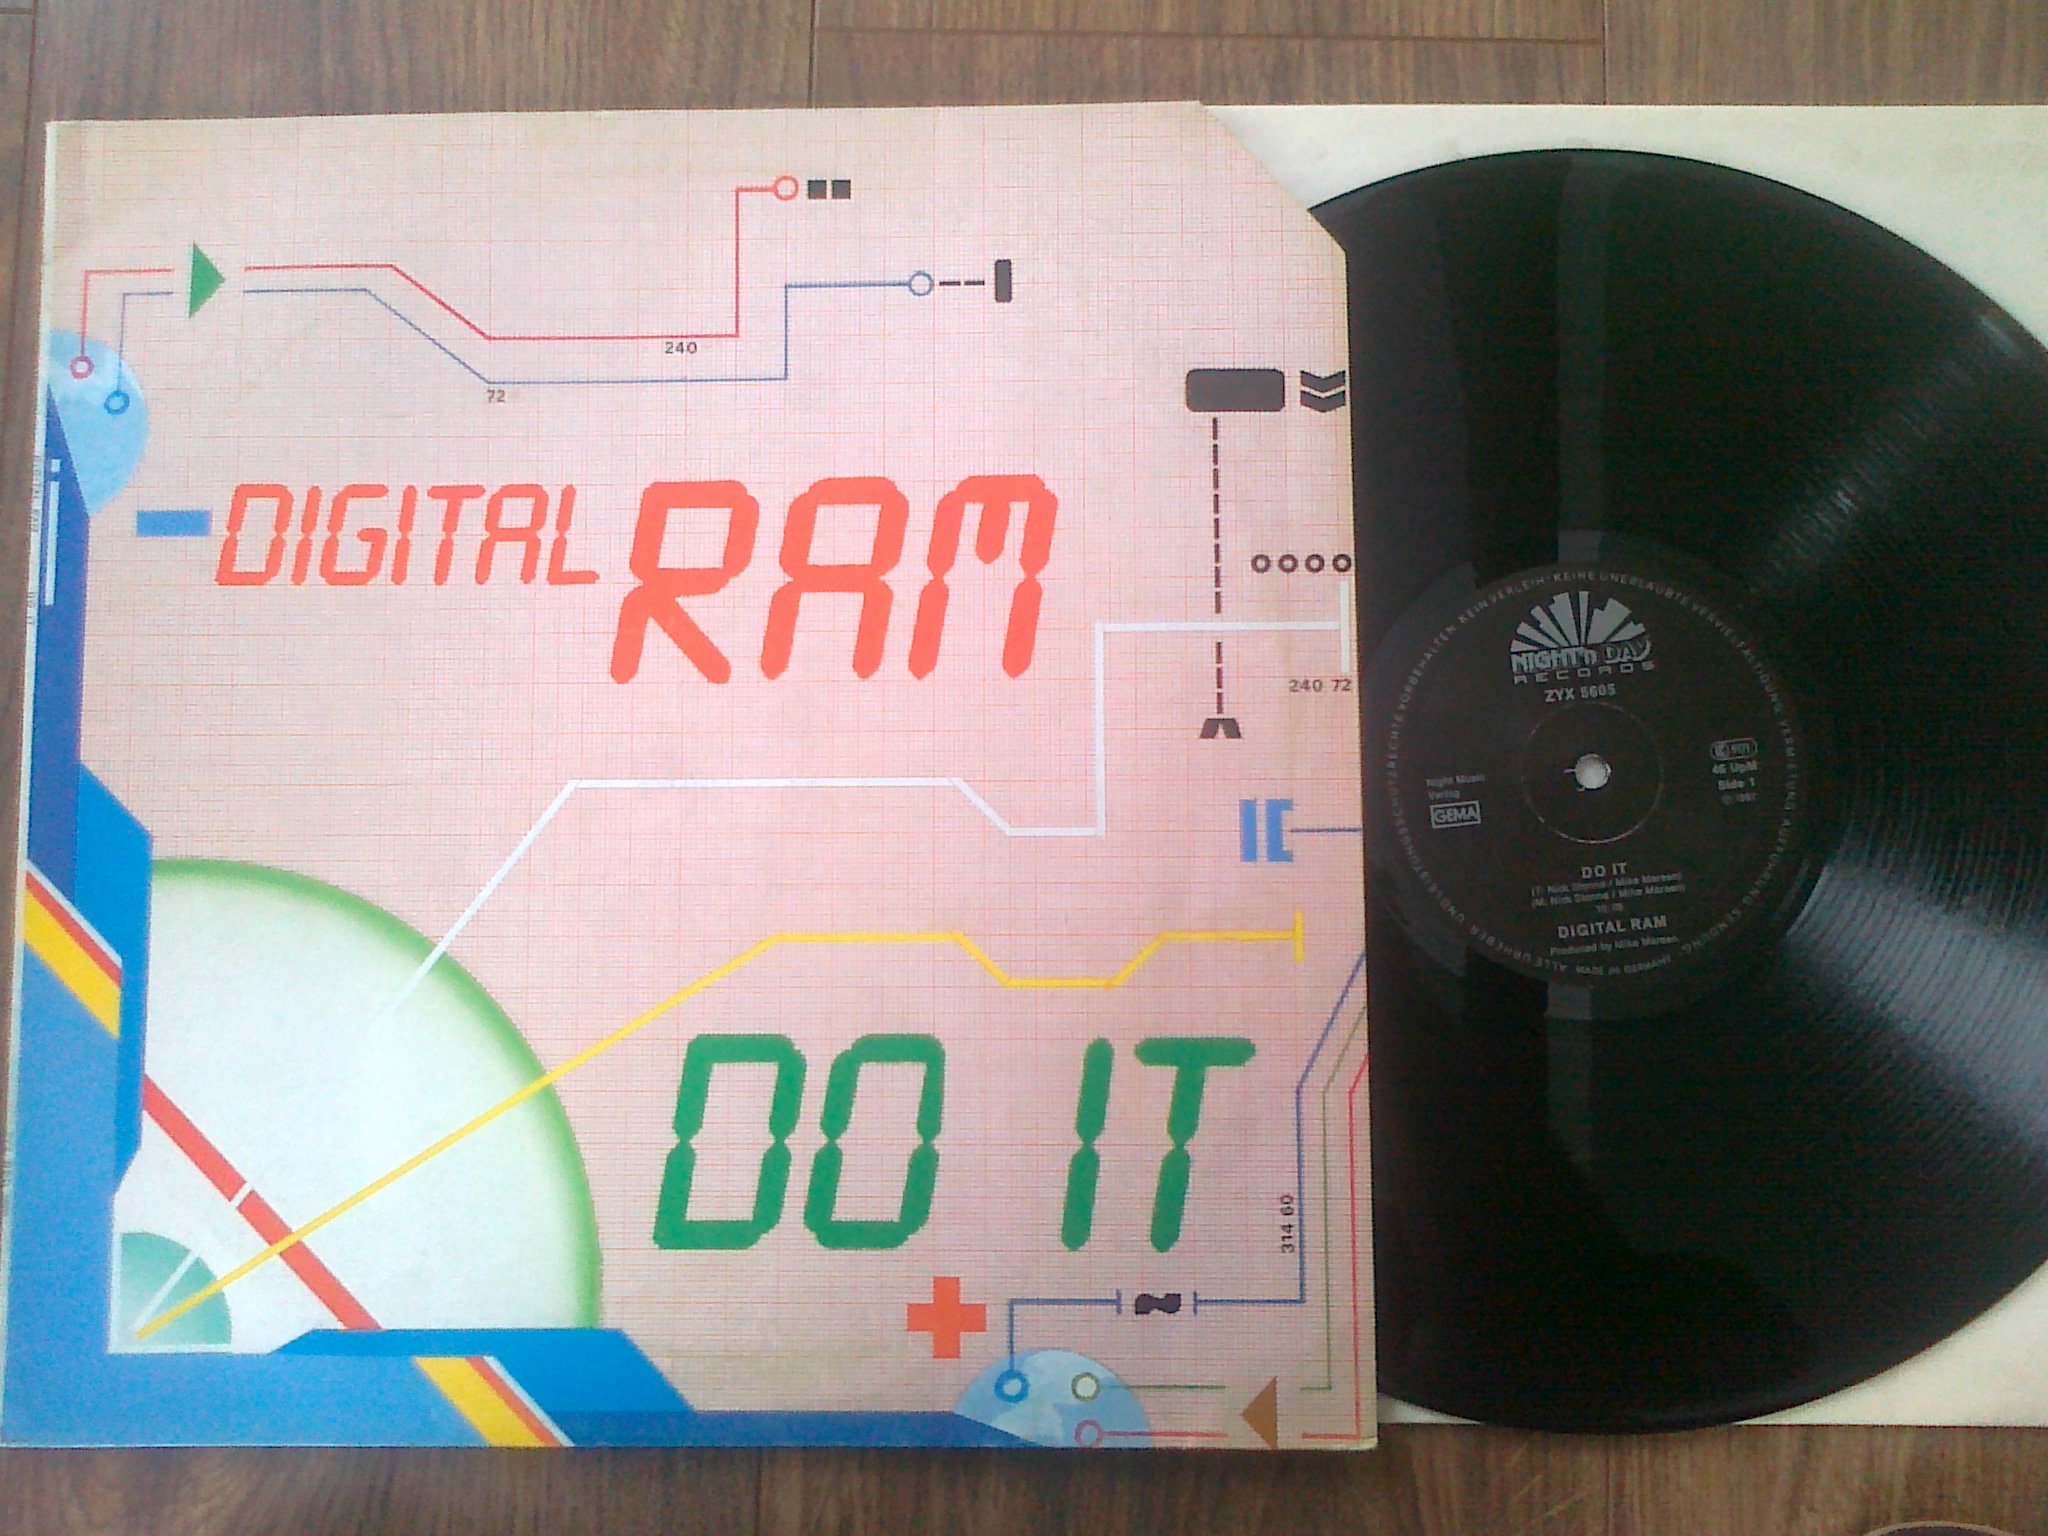 Digital Ram - Do It